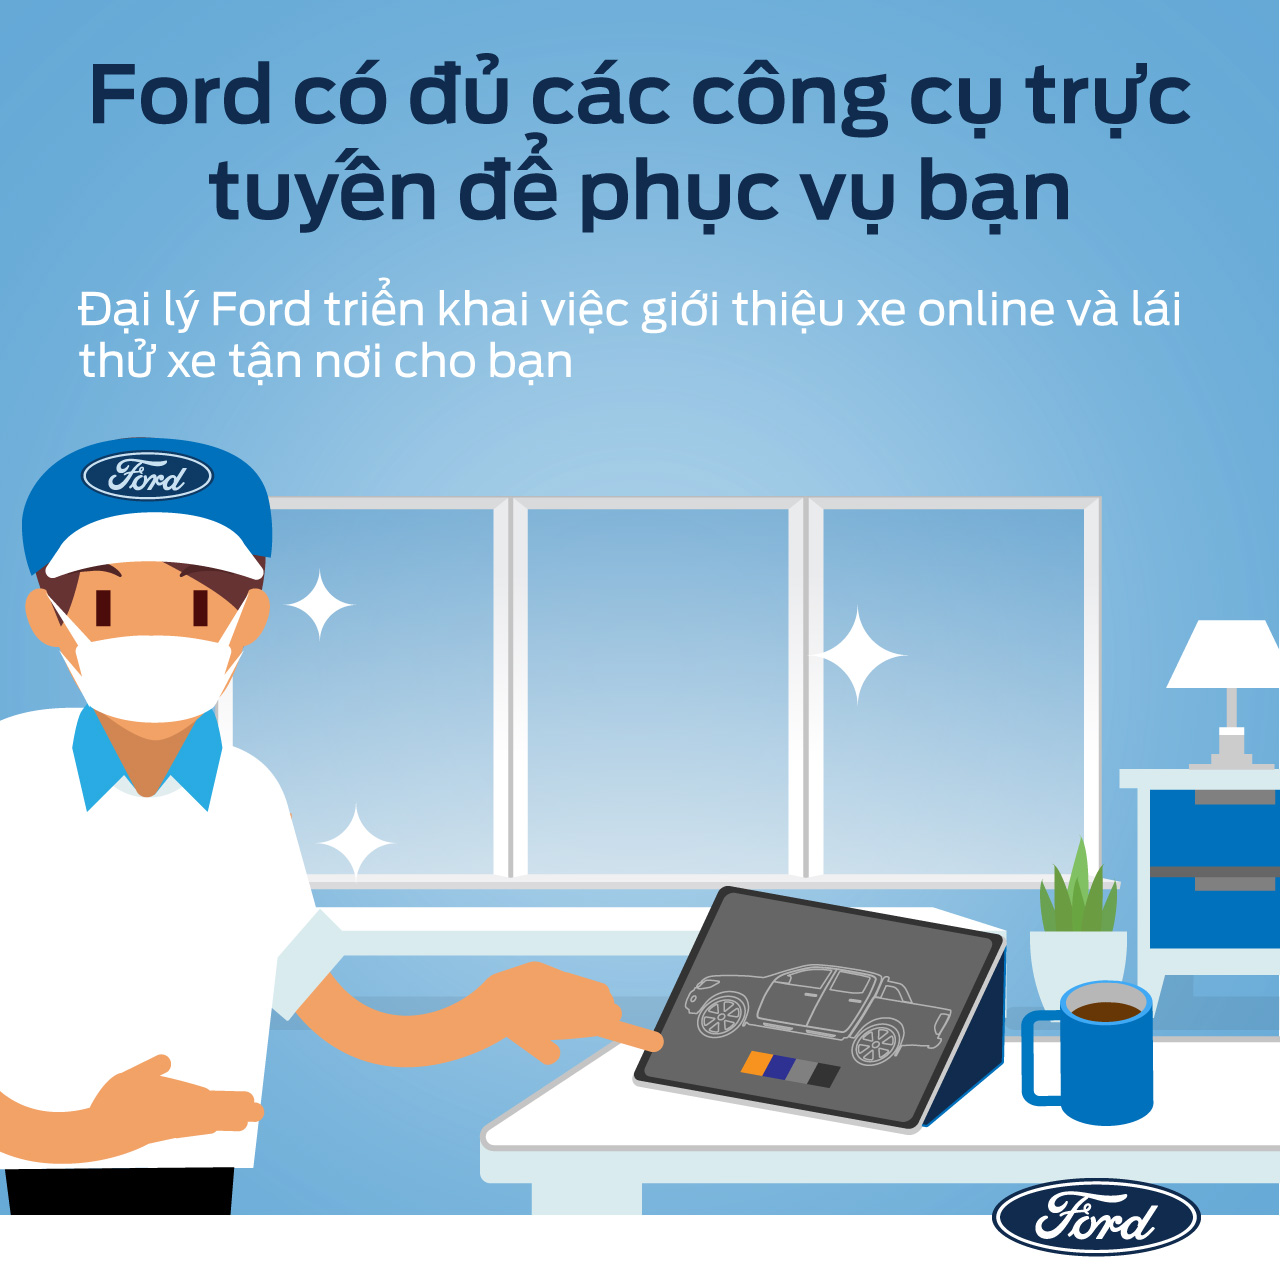 Ford Việt Nam triển khai các dịch vụ hỗ trợ khách hàng an toàn, hiệu quả và thuận tiện trong mùa dịch - 6